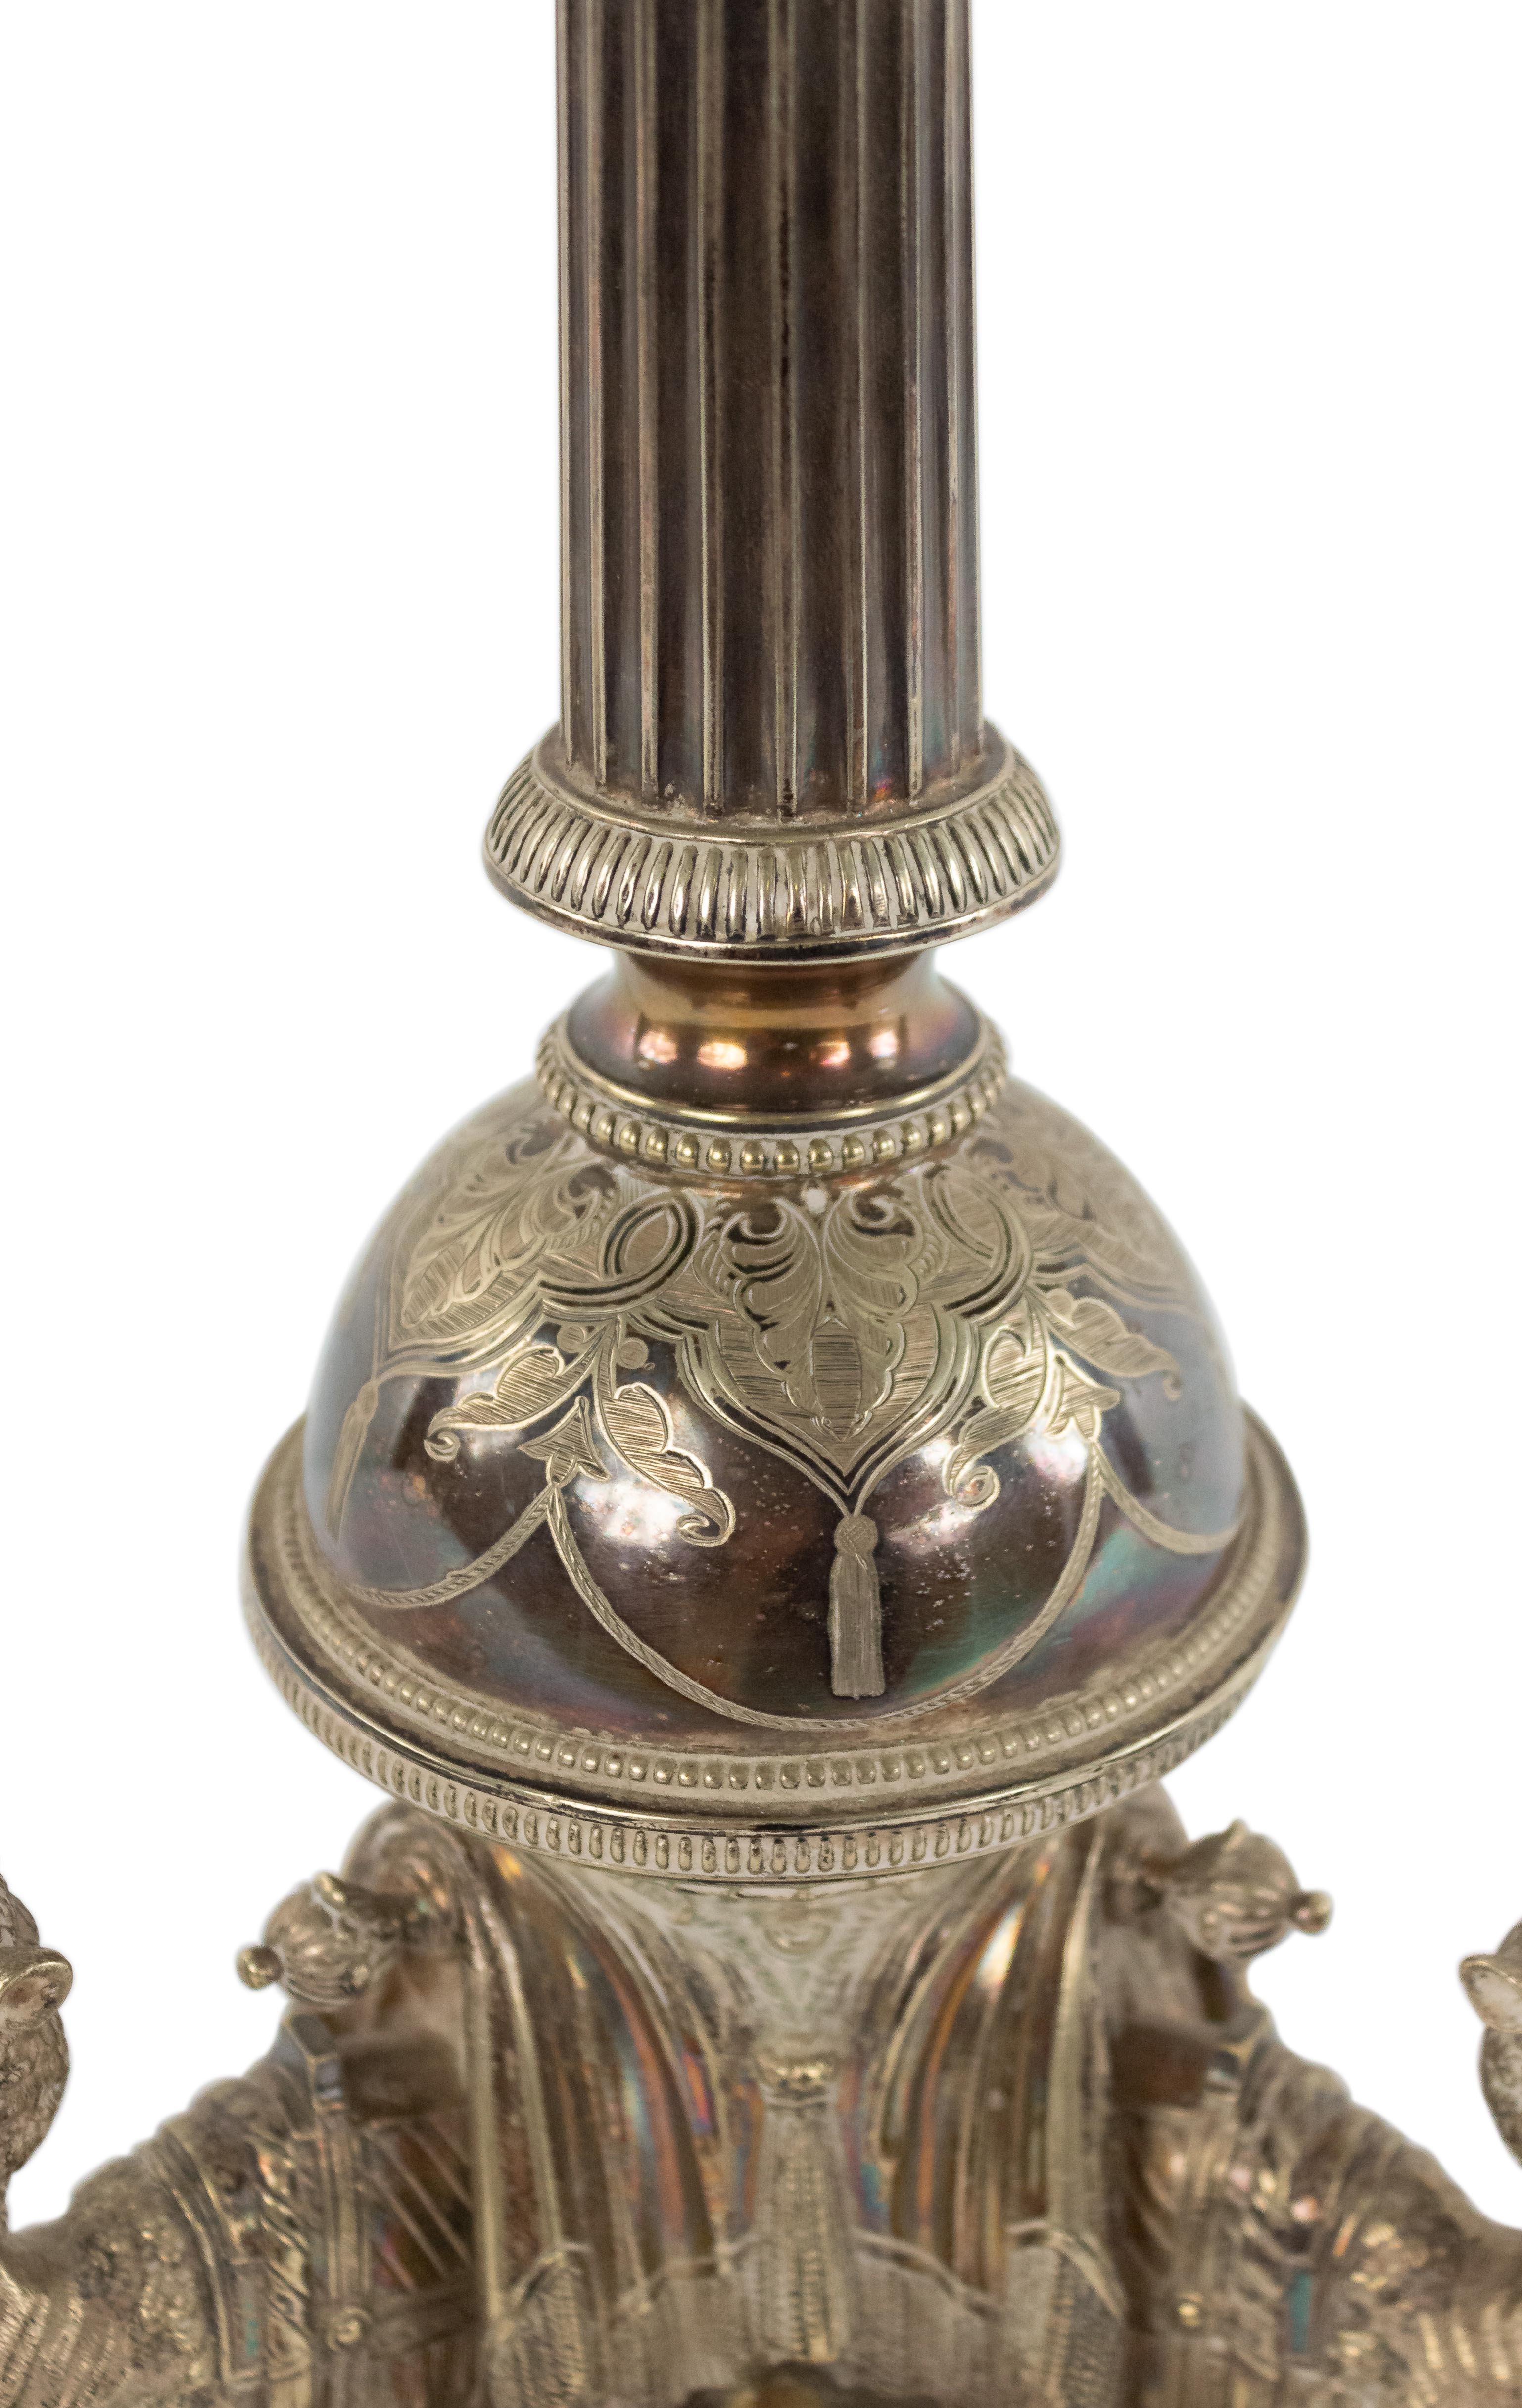 Lampe de table anglaise victorienne (datée de 1865) en métal argenté avec des chameaux agenouillés sur une base tripartite sous un fût en forme de colonne cannelée.
